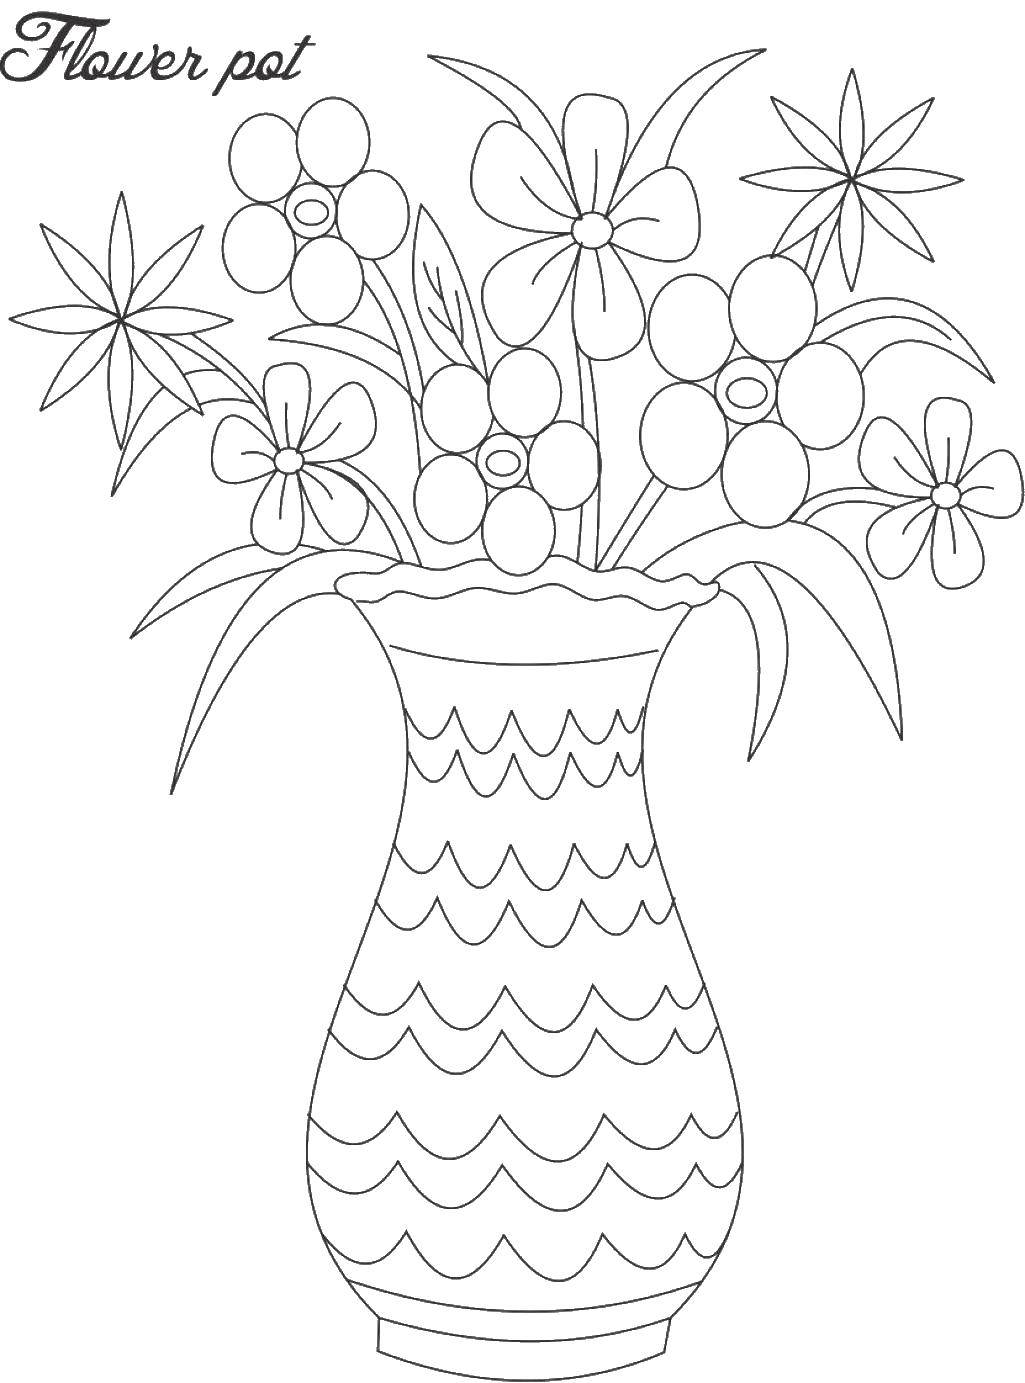 Раскраска Ваза с красивыми цветами и узорами (ваза, цветы, узоры, творческие)